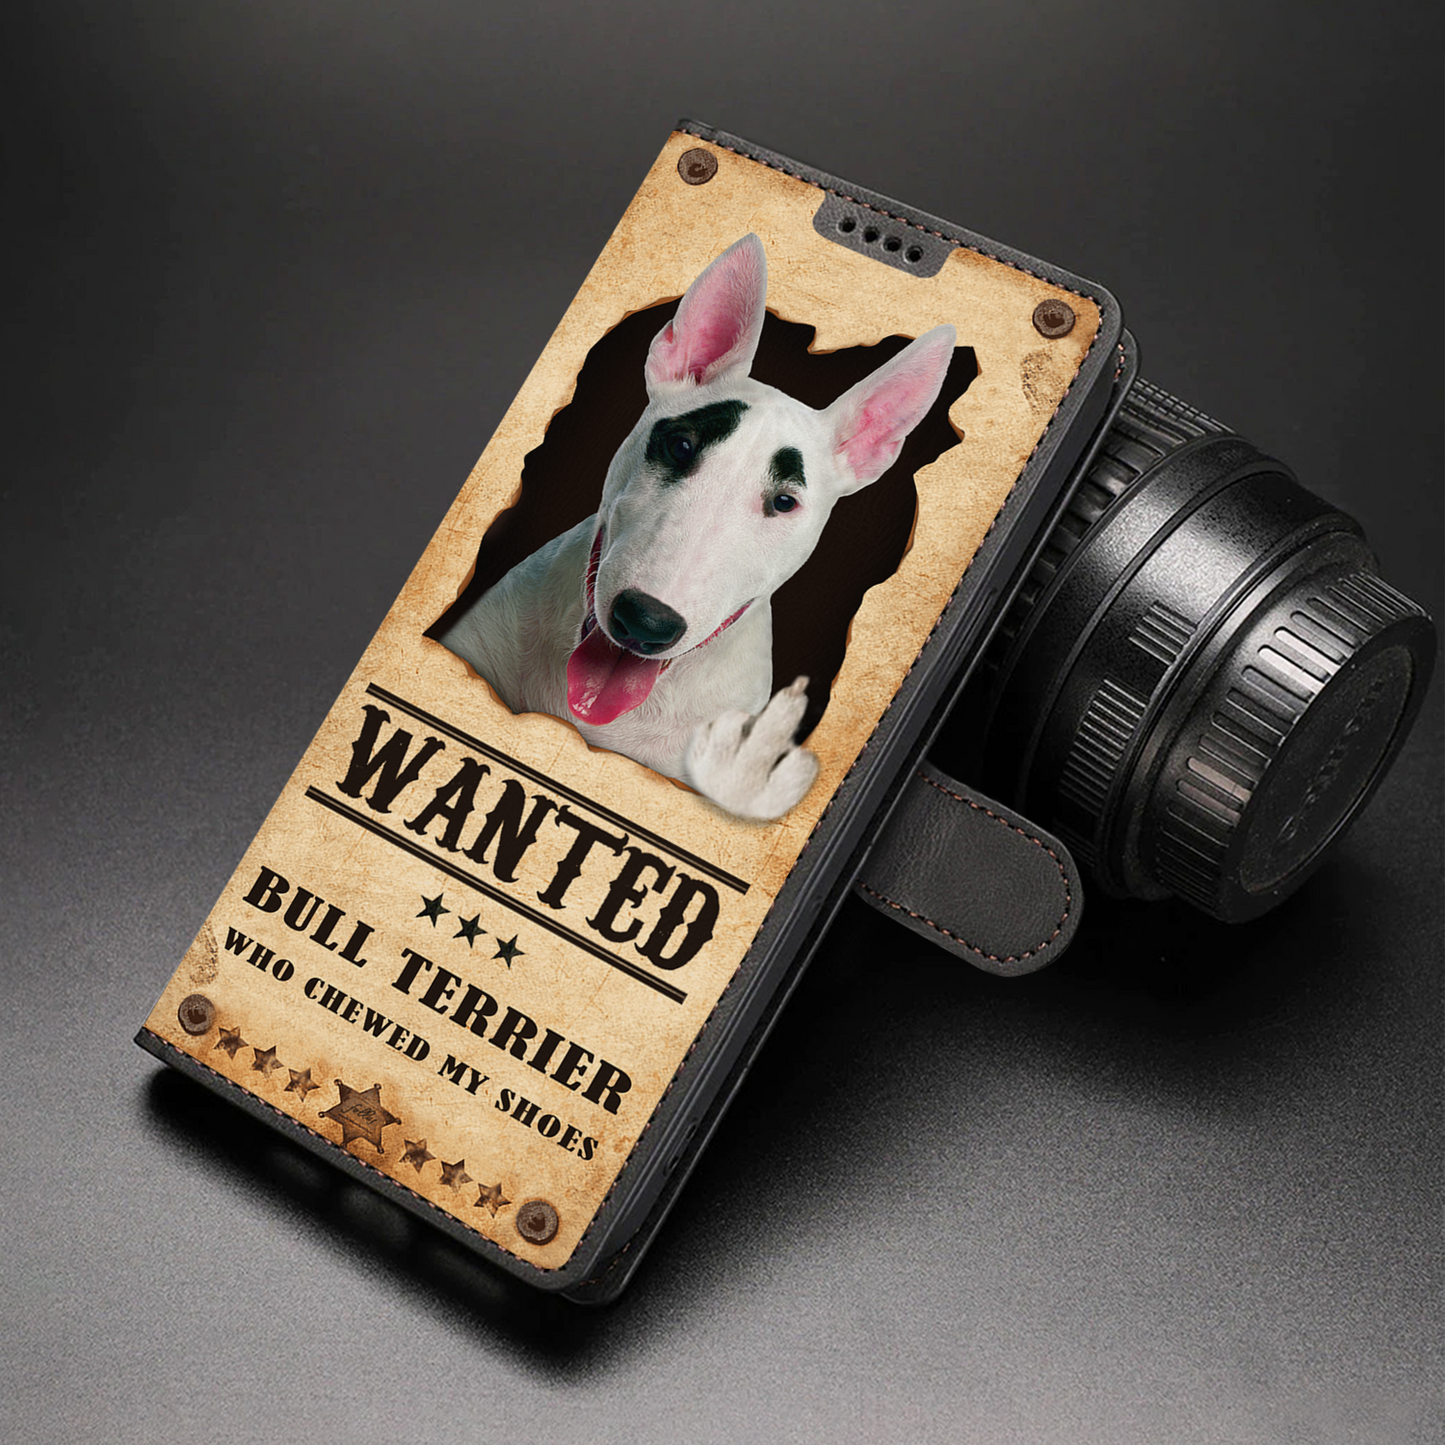 Bull Terrier Wanted - Étui portefeuille amusant pour téléphone V1